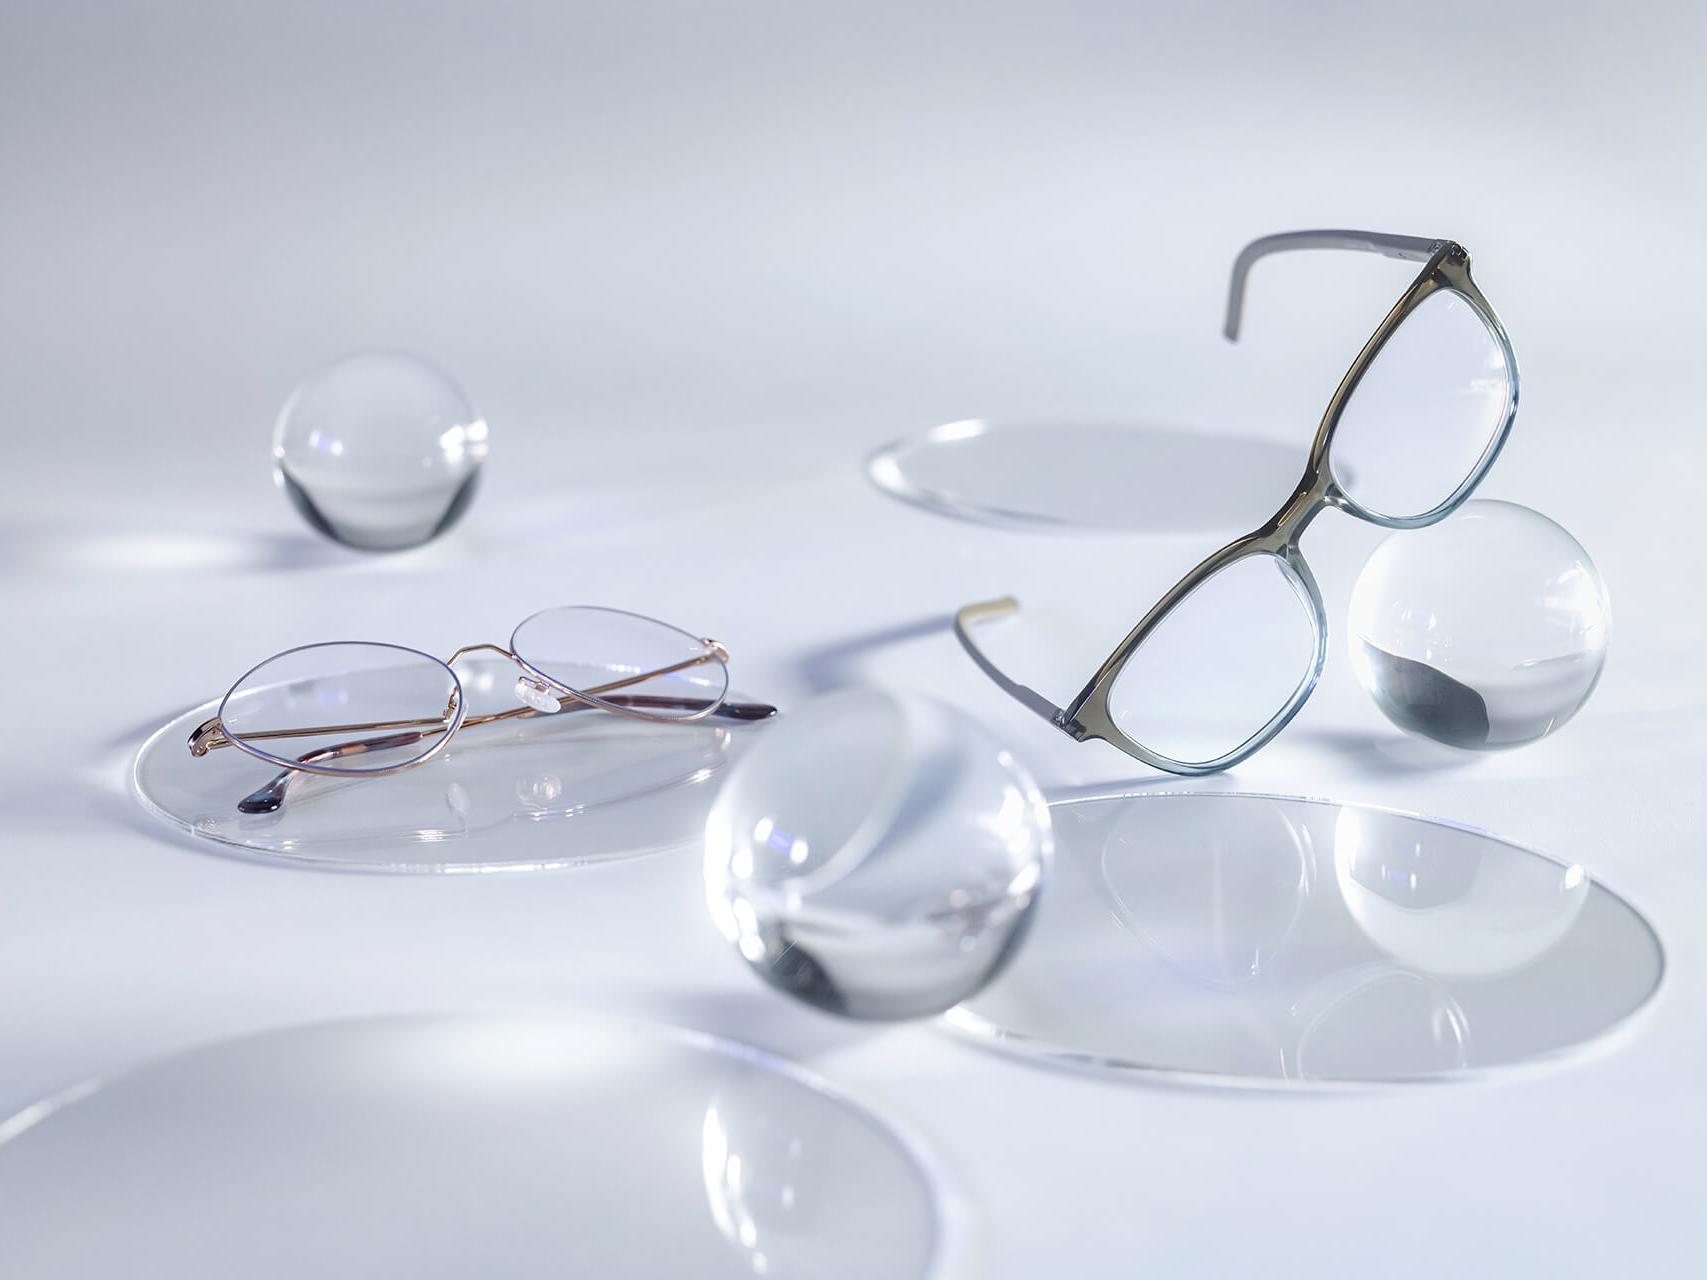 Óculos com lentes ZEISS e revestimento DuraVision® Silver sem nenhum reflexo em comparação com as esferas de vidro ao redor.